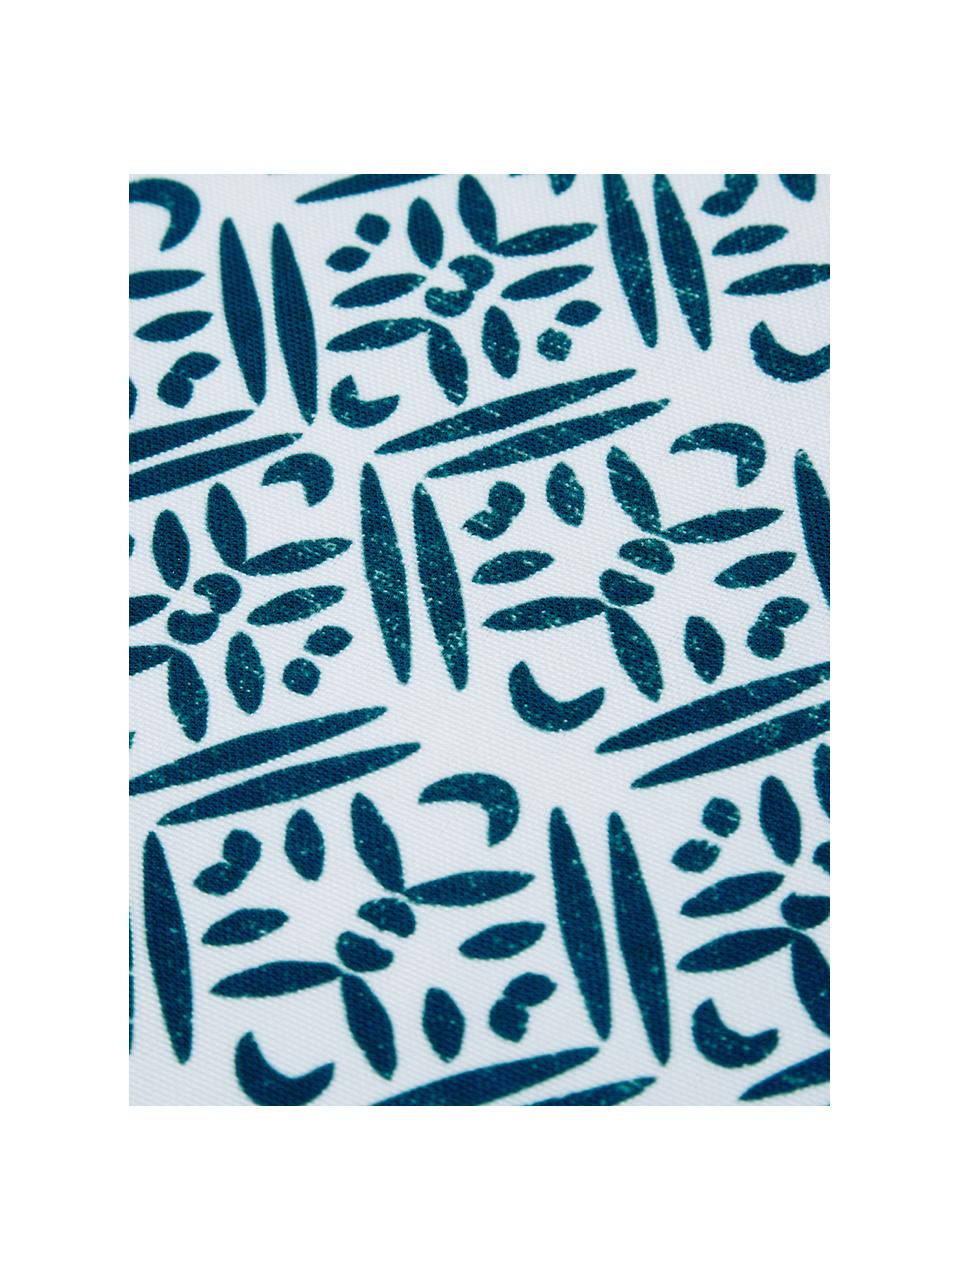 Wasserabweisende Kunststoff-Tischsets Fishbone, 2 Stück, Polyester, Weiss, Blautöne, B 33 x L 48 cm